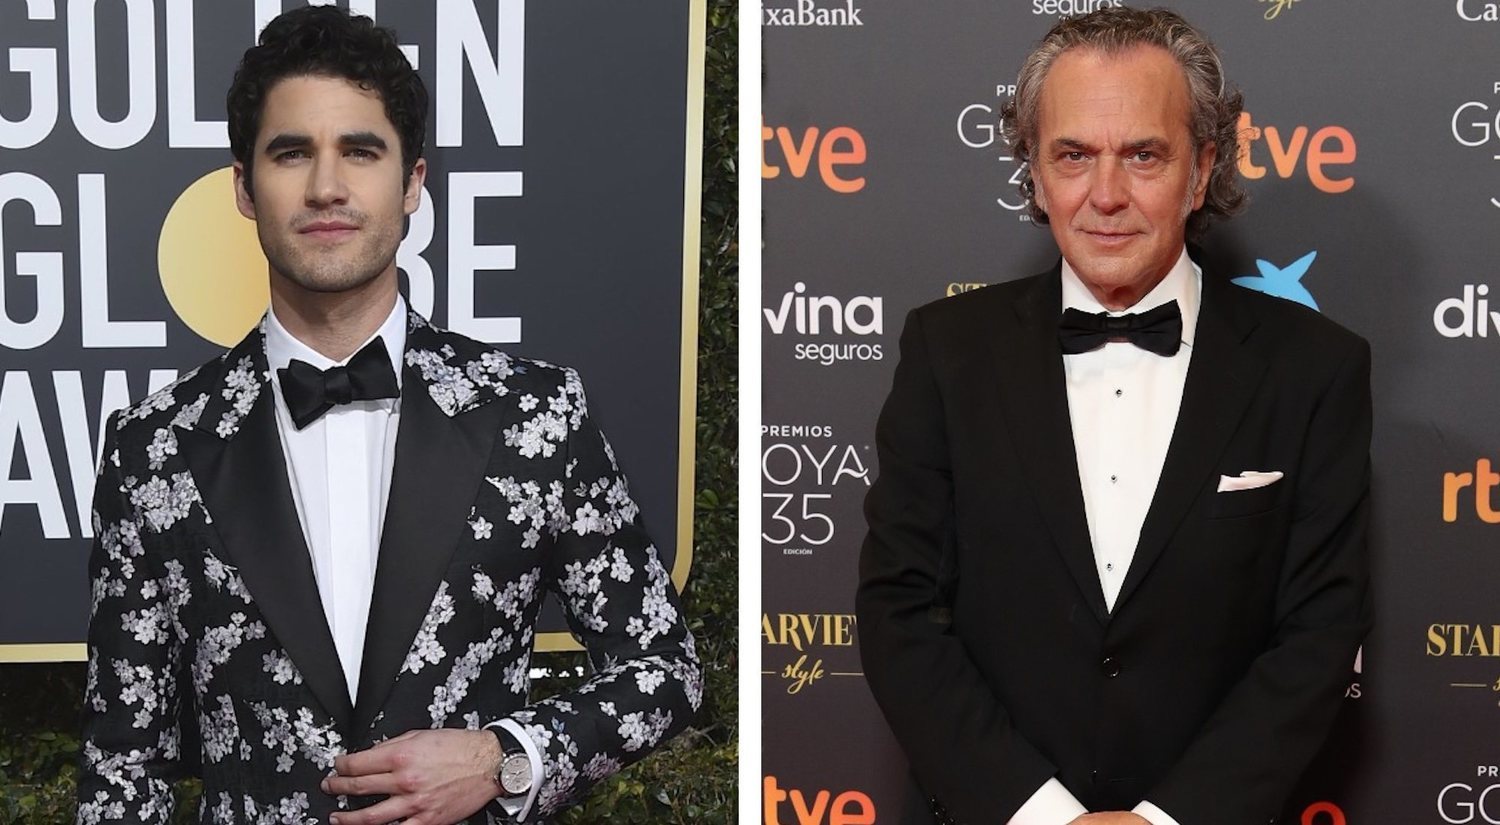 EEUU vs España: ¿por qué los actores visten tan diferente en la alfombra roja?